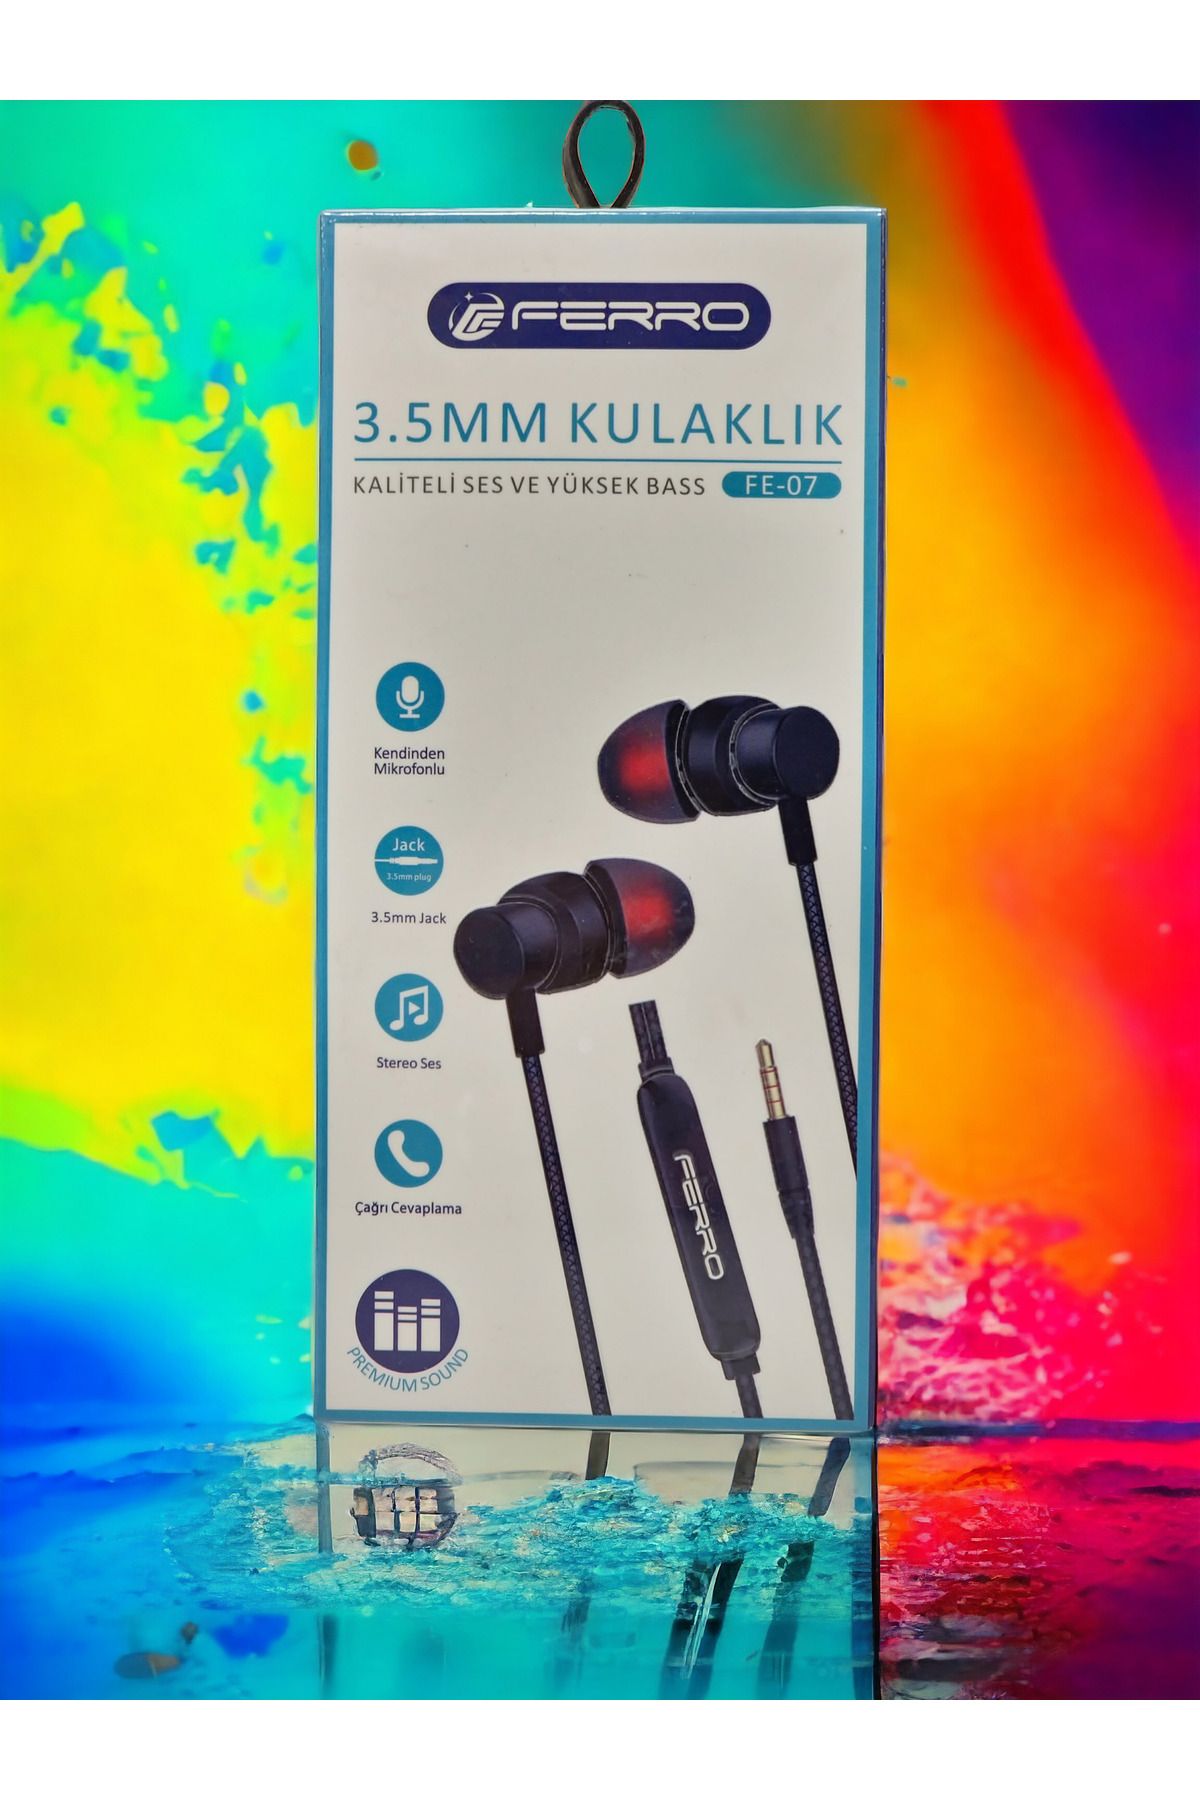 FERRO Kaliteli Ses ve Yüksek Bas Kablolu Kulaklık - Dahili Mikrofonlu, Premium Ses Deneyimi